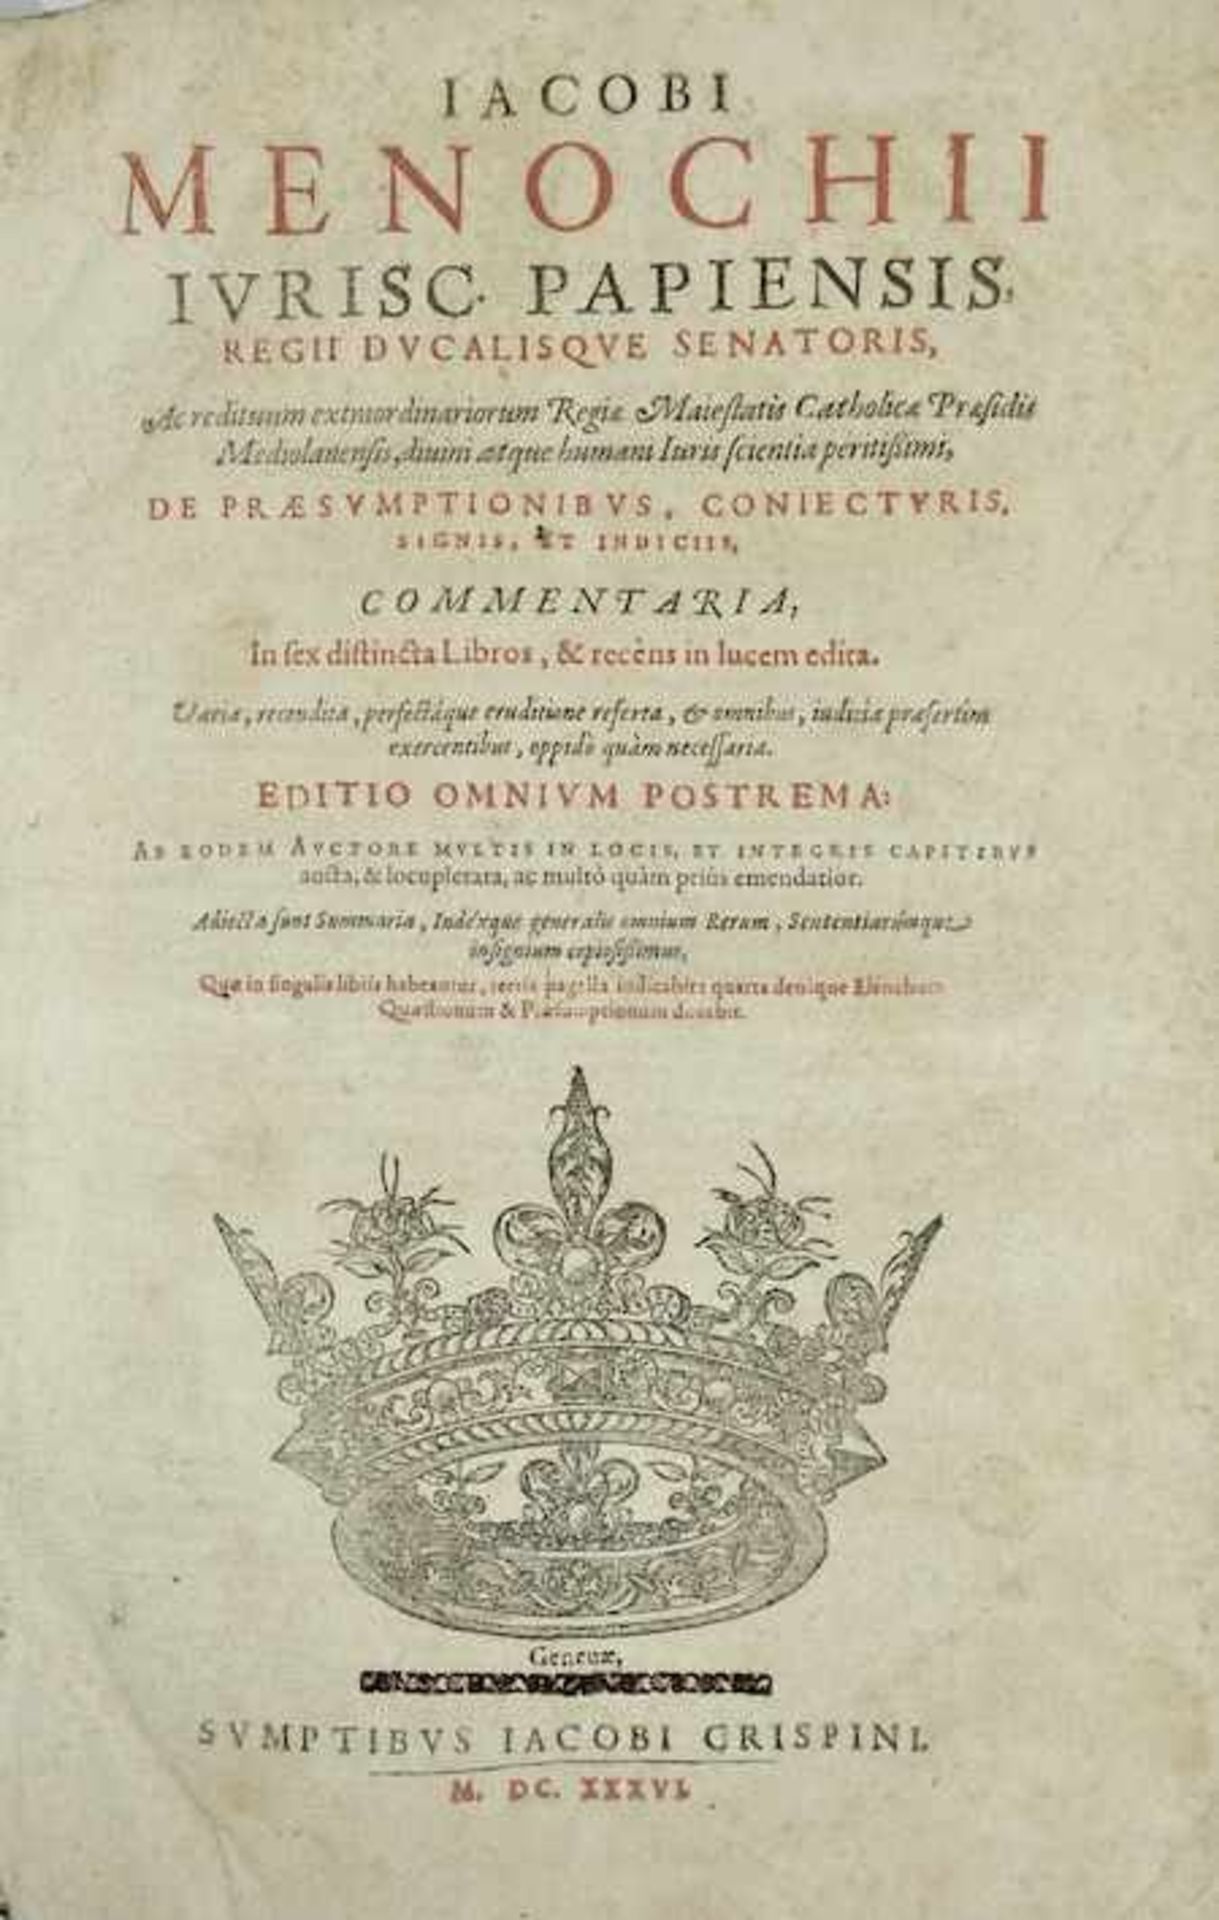 MENOCHIUS, J. De præsumptionibus, coniecturis, signis, et indiciis, commentaria. Geneva, J. Crispin,